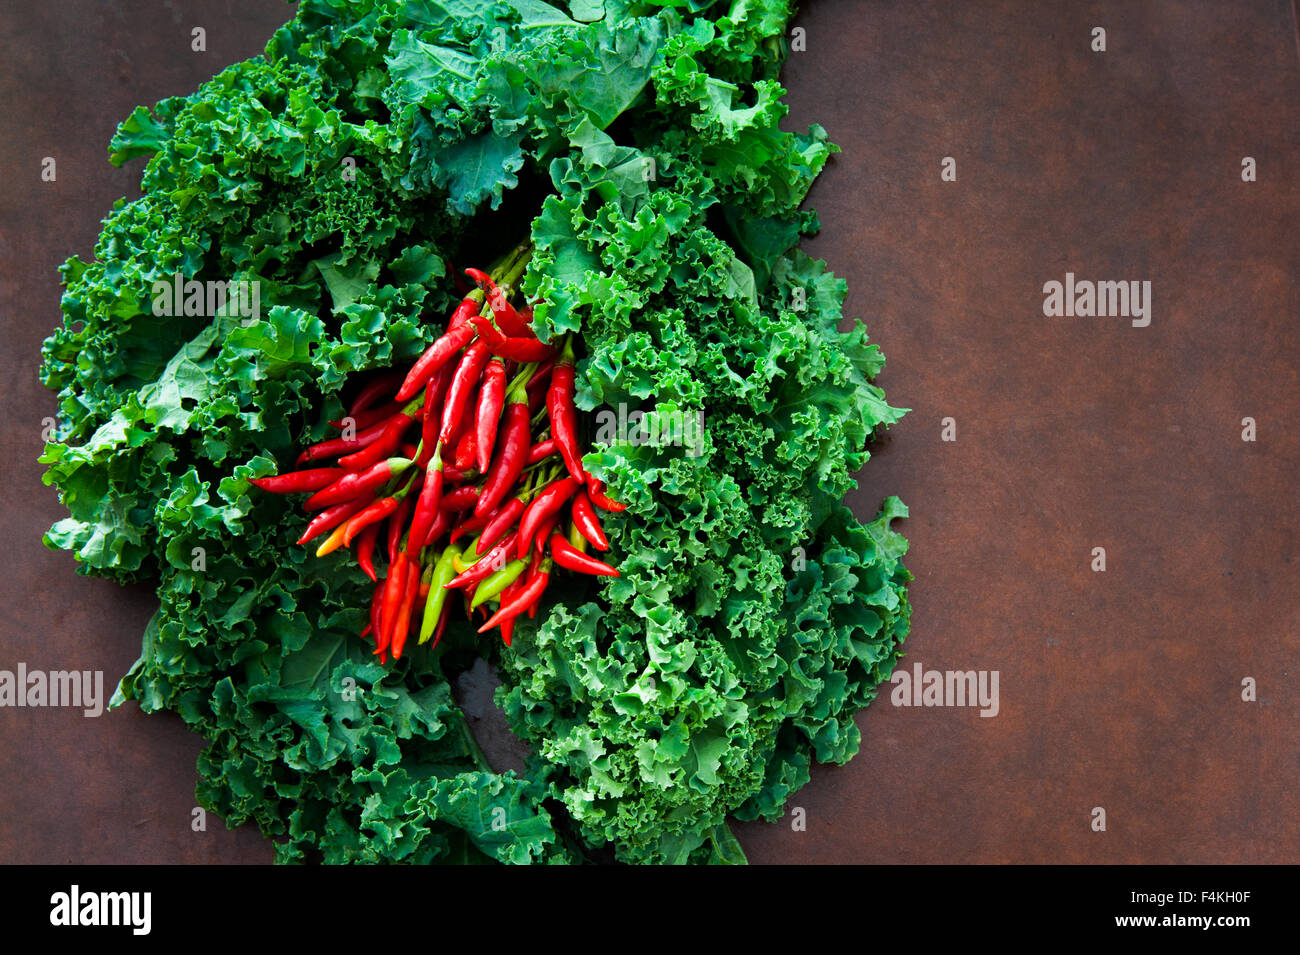 Jede Menge frischen rohen grünen Grünkohl Pflanze und Paprika auf braunen Tisch Stockfoto